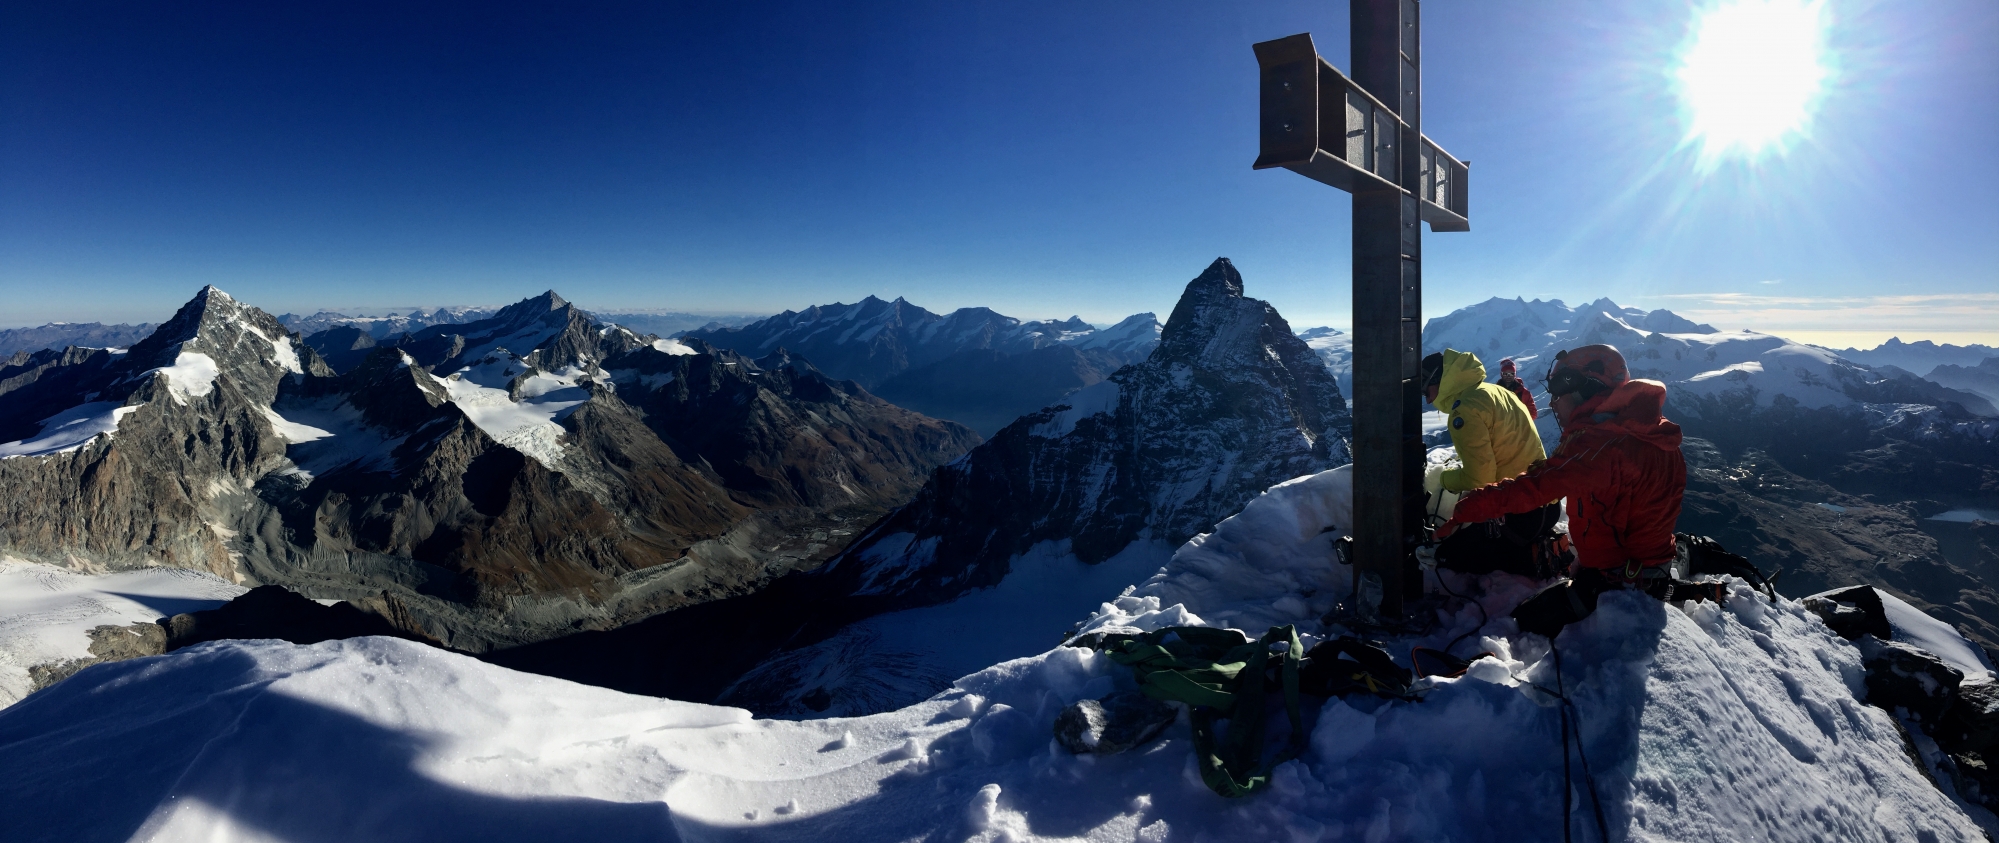 La croix située au sommet de la Dent d'Hérens, au-dessus de Zermatt, a été tronçonnée par des inconnus entre le 31 juillet et le 1er août derniers.